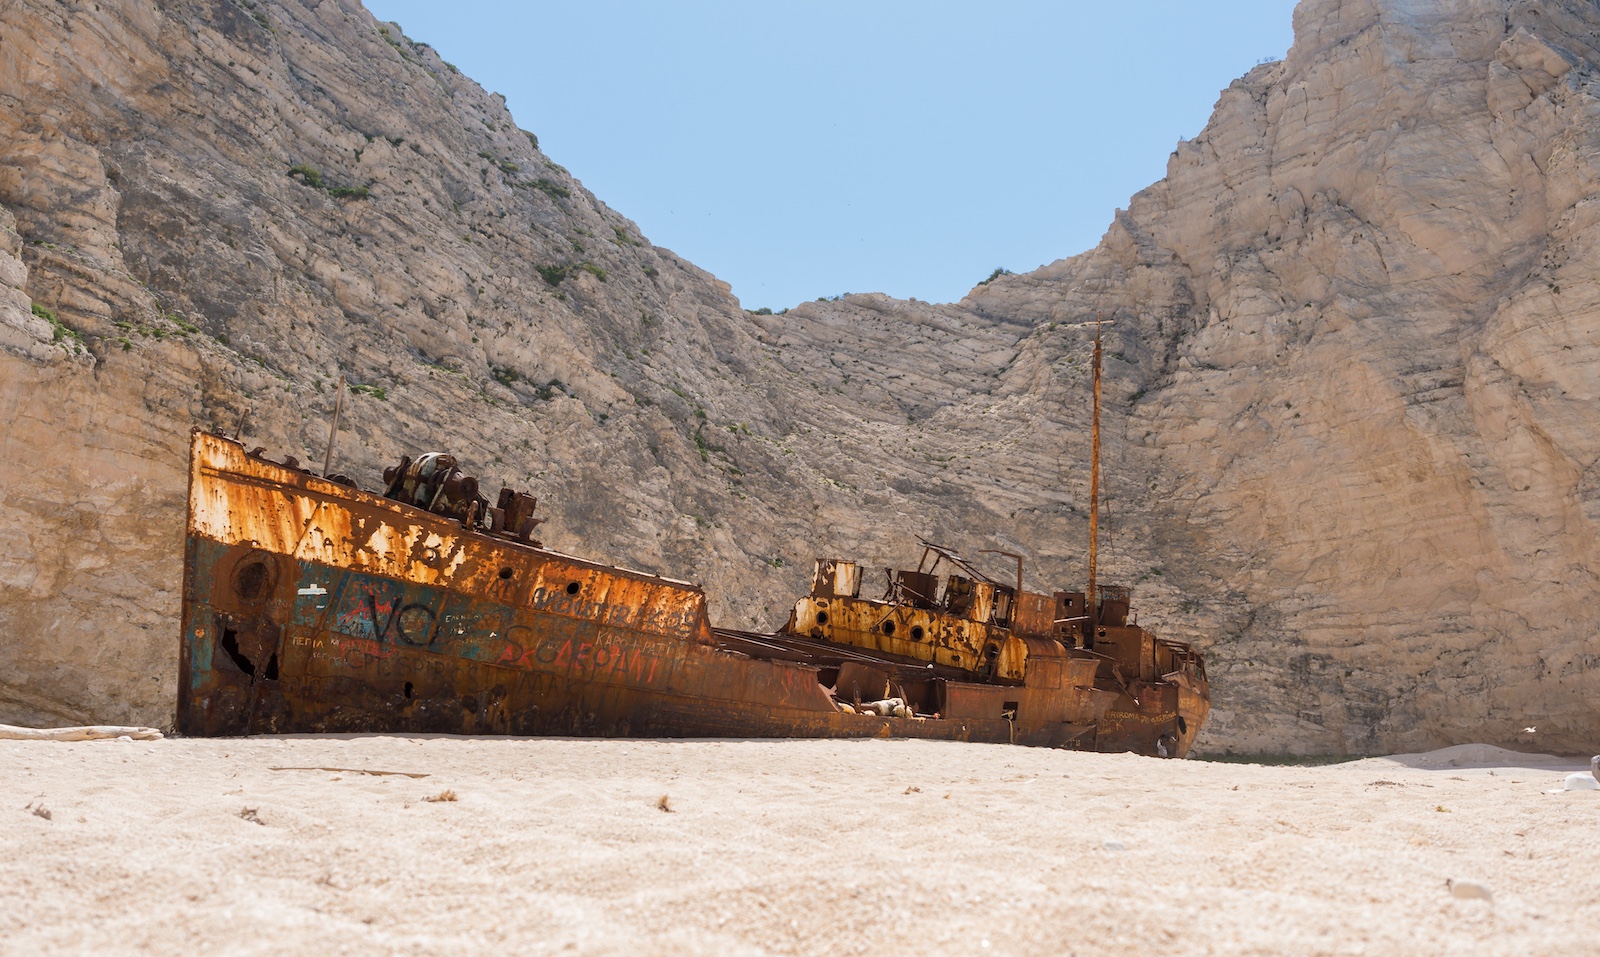 ΝΑΥΑΓΙΟ ΚΑΙ ΓΑΛΑΖΙΕΣ ΣΠΗΛΙΕΣ (με μικρο σκαφος) – Best Of Zante | Shipwreck, Blue Caves, Zakynthos beaches by boat